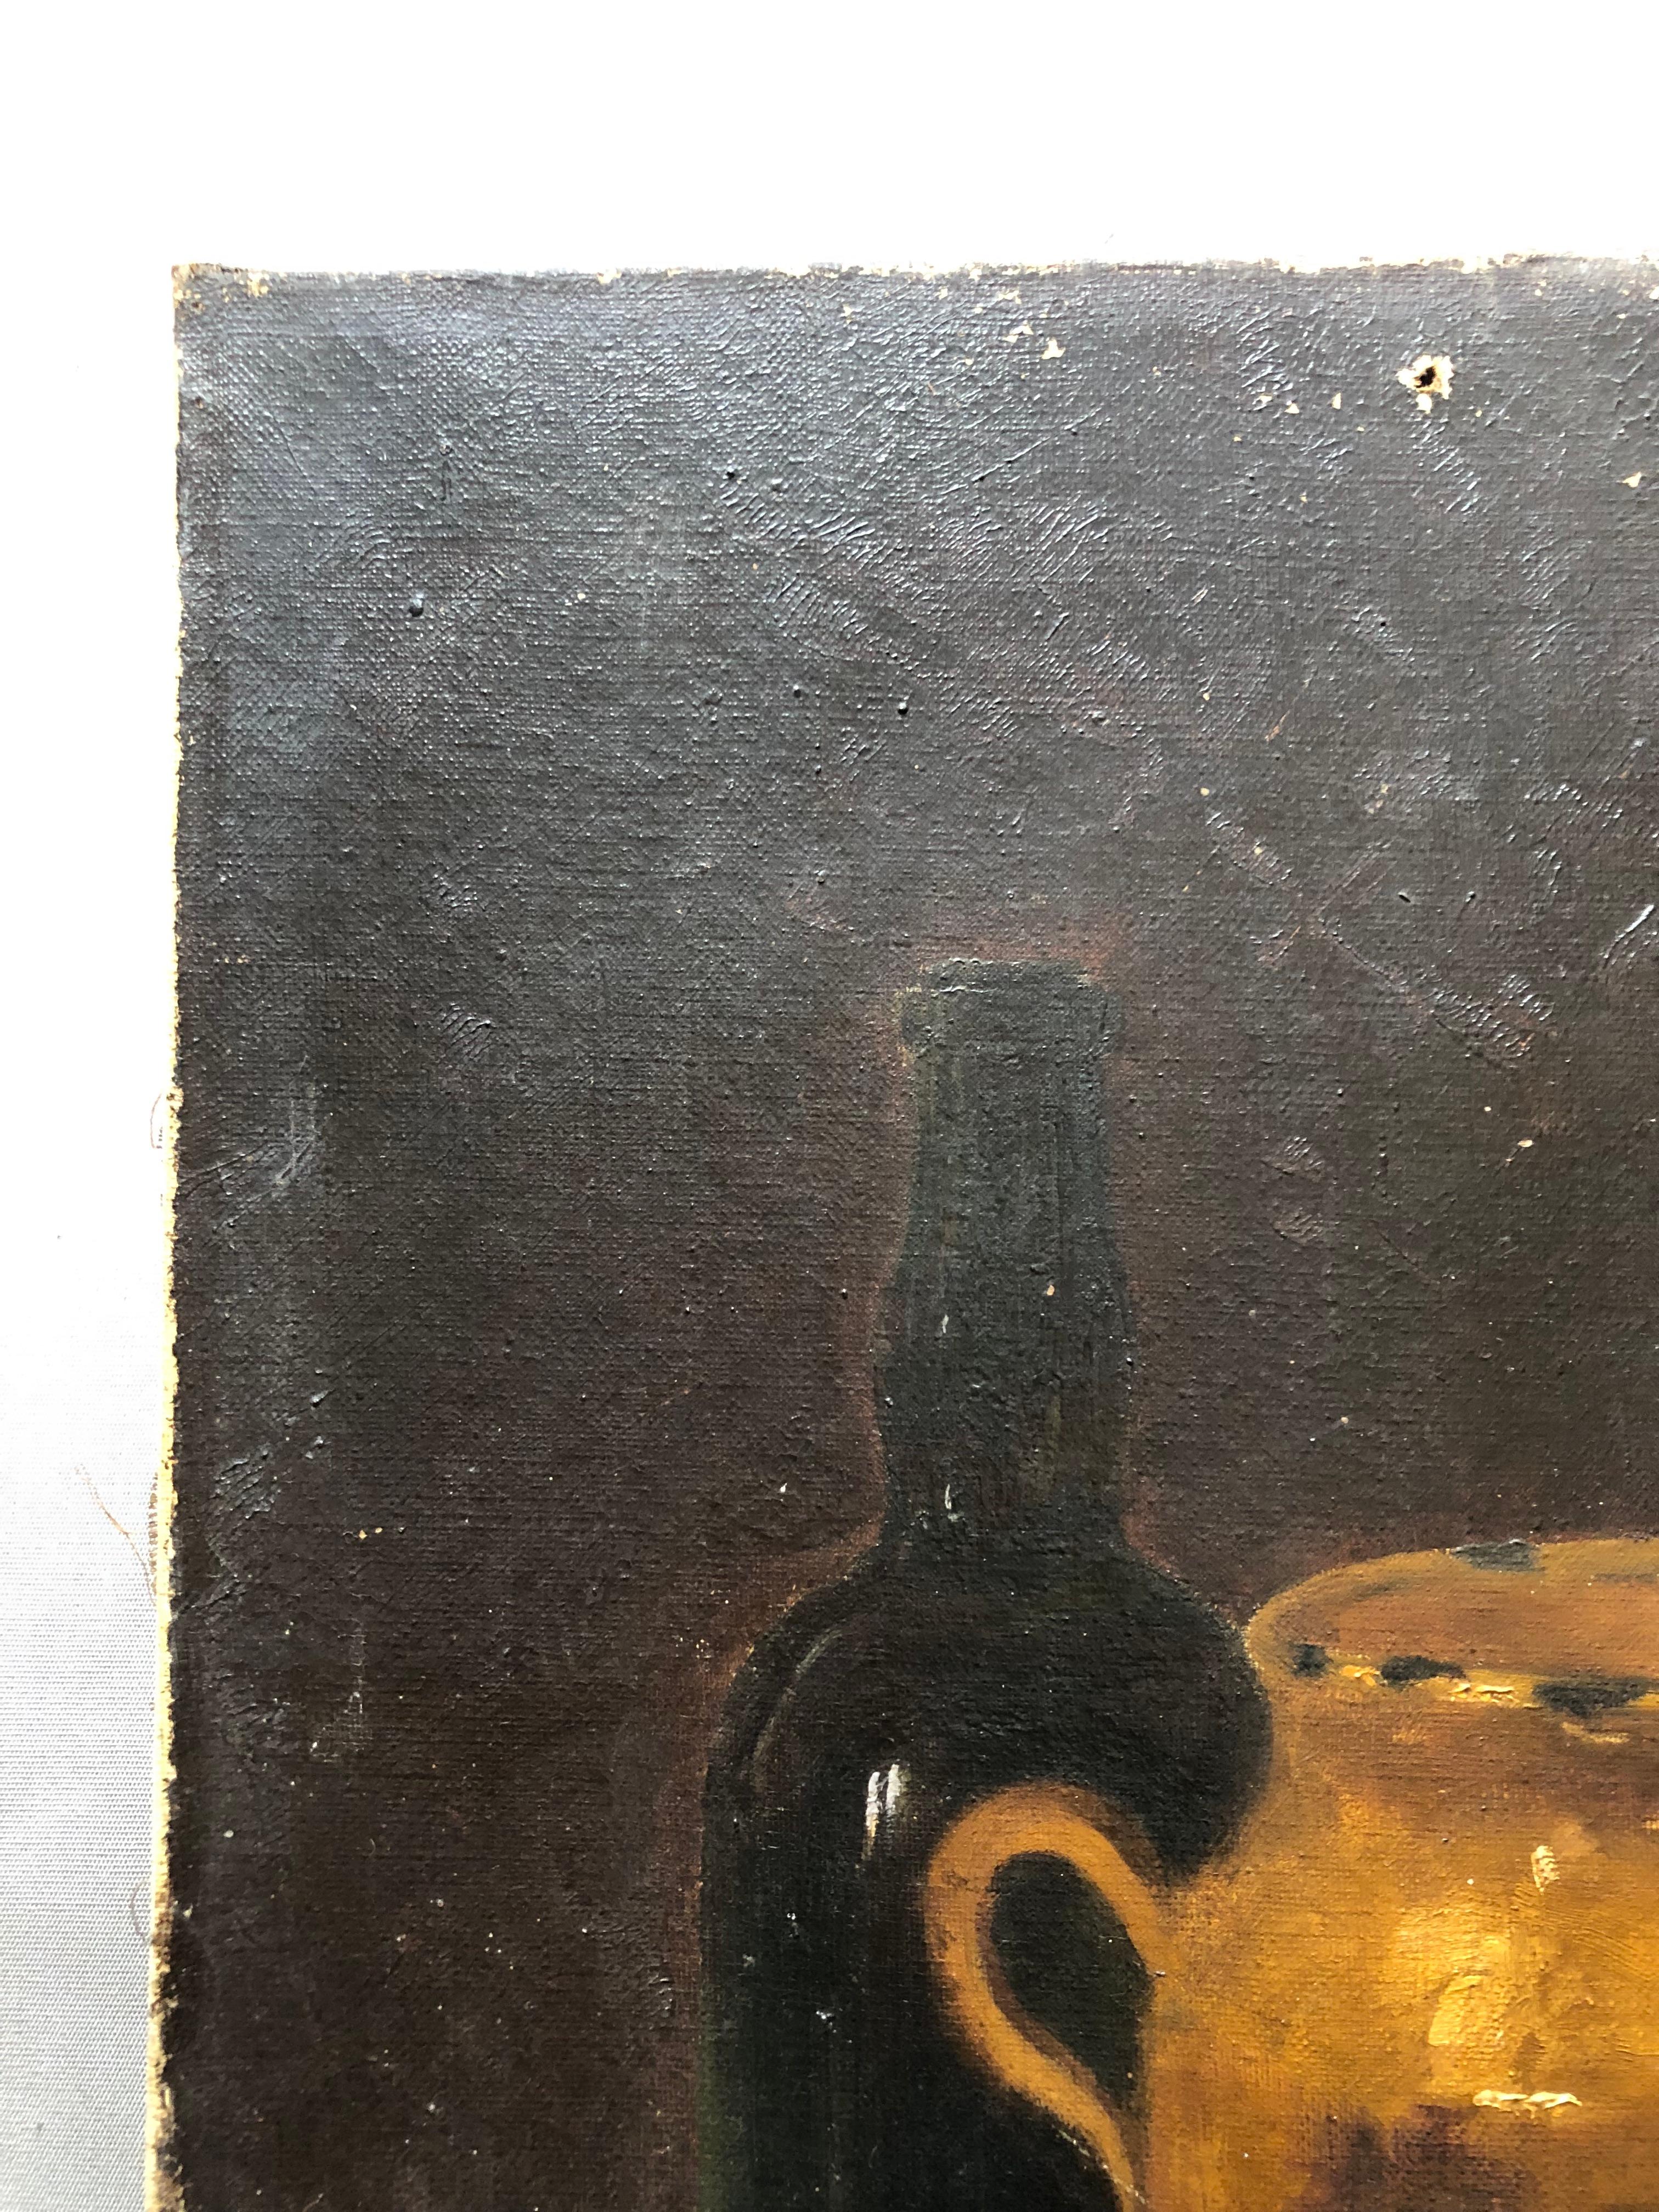 Stilleben mit Radieschen.
19. Jahrhundert Öl auf Leinwand signiert Yvonne.
Ein Loch in der oberen Mitte.
Risse und kleine Farbverluste an der Oberseite.
55 x 38 cm